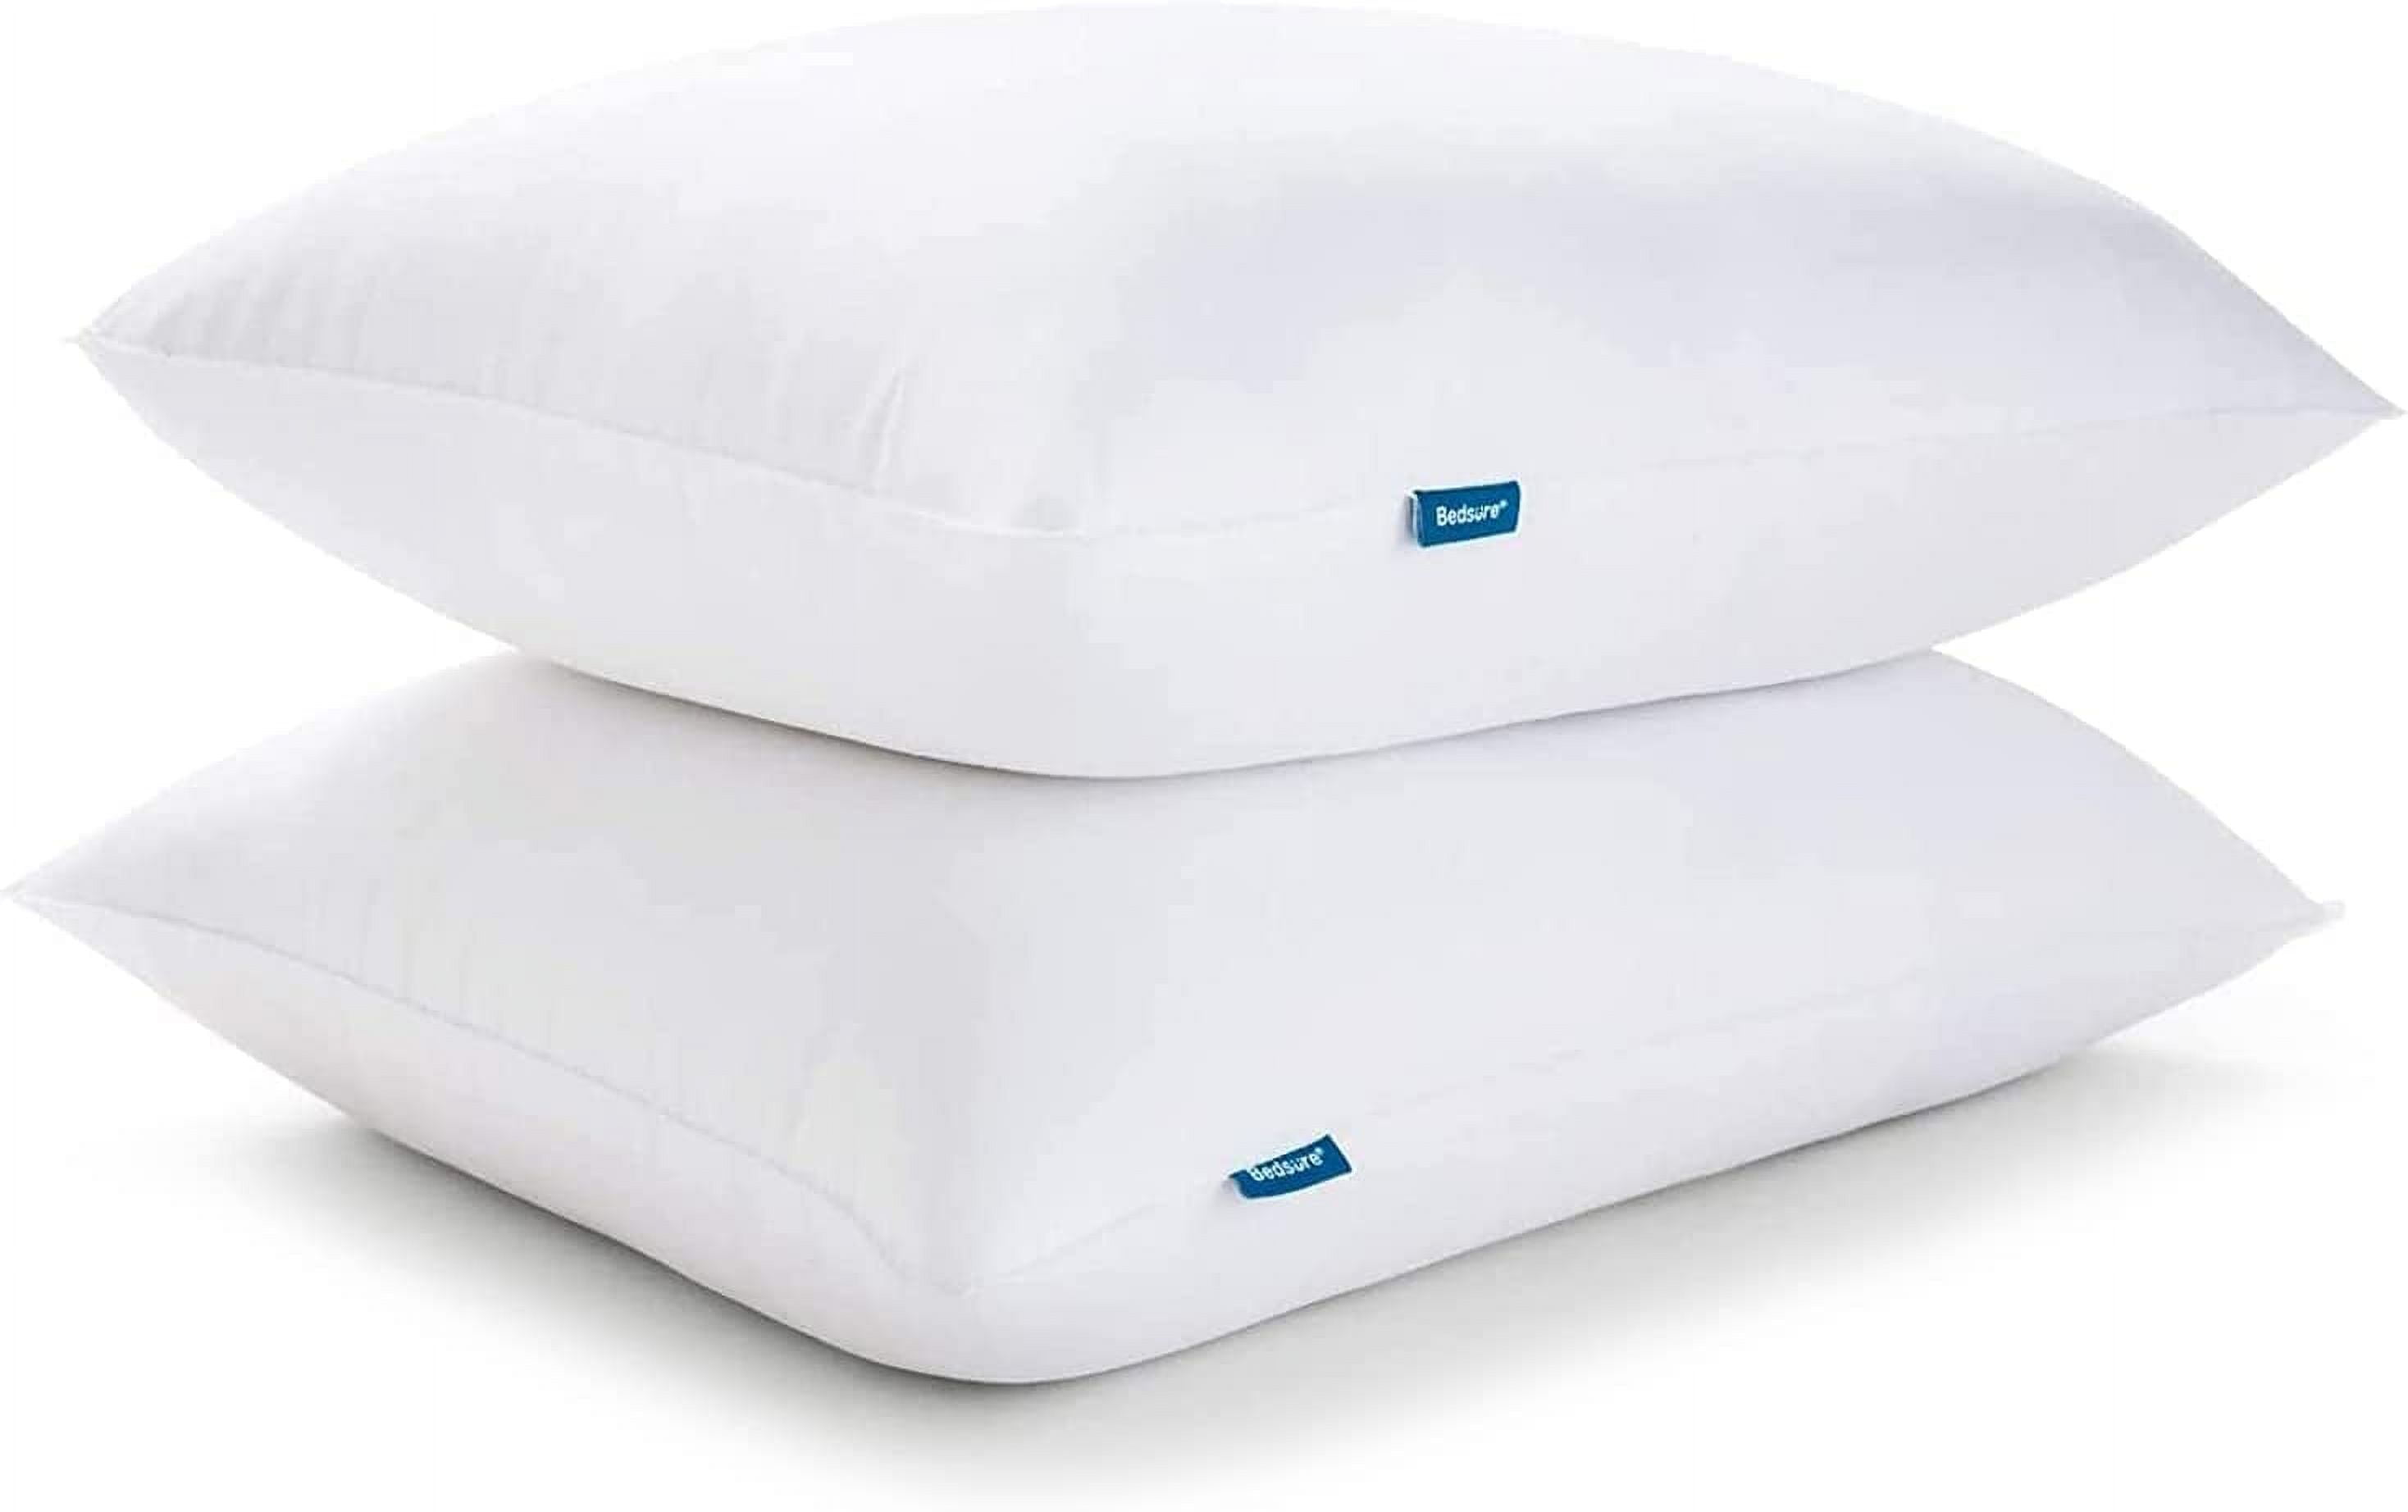 Bedsure Firm Pillows Standard Set of 2, Bed Pillows for Sleeping